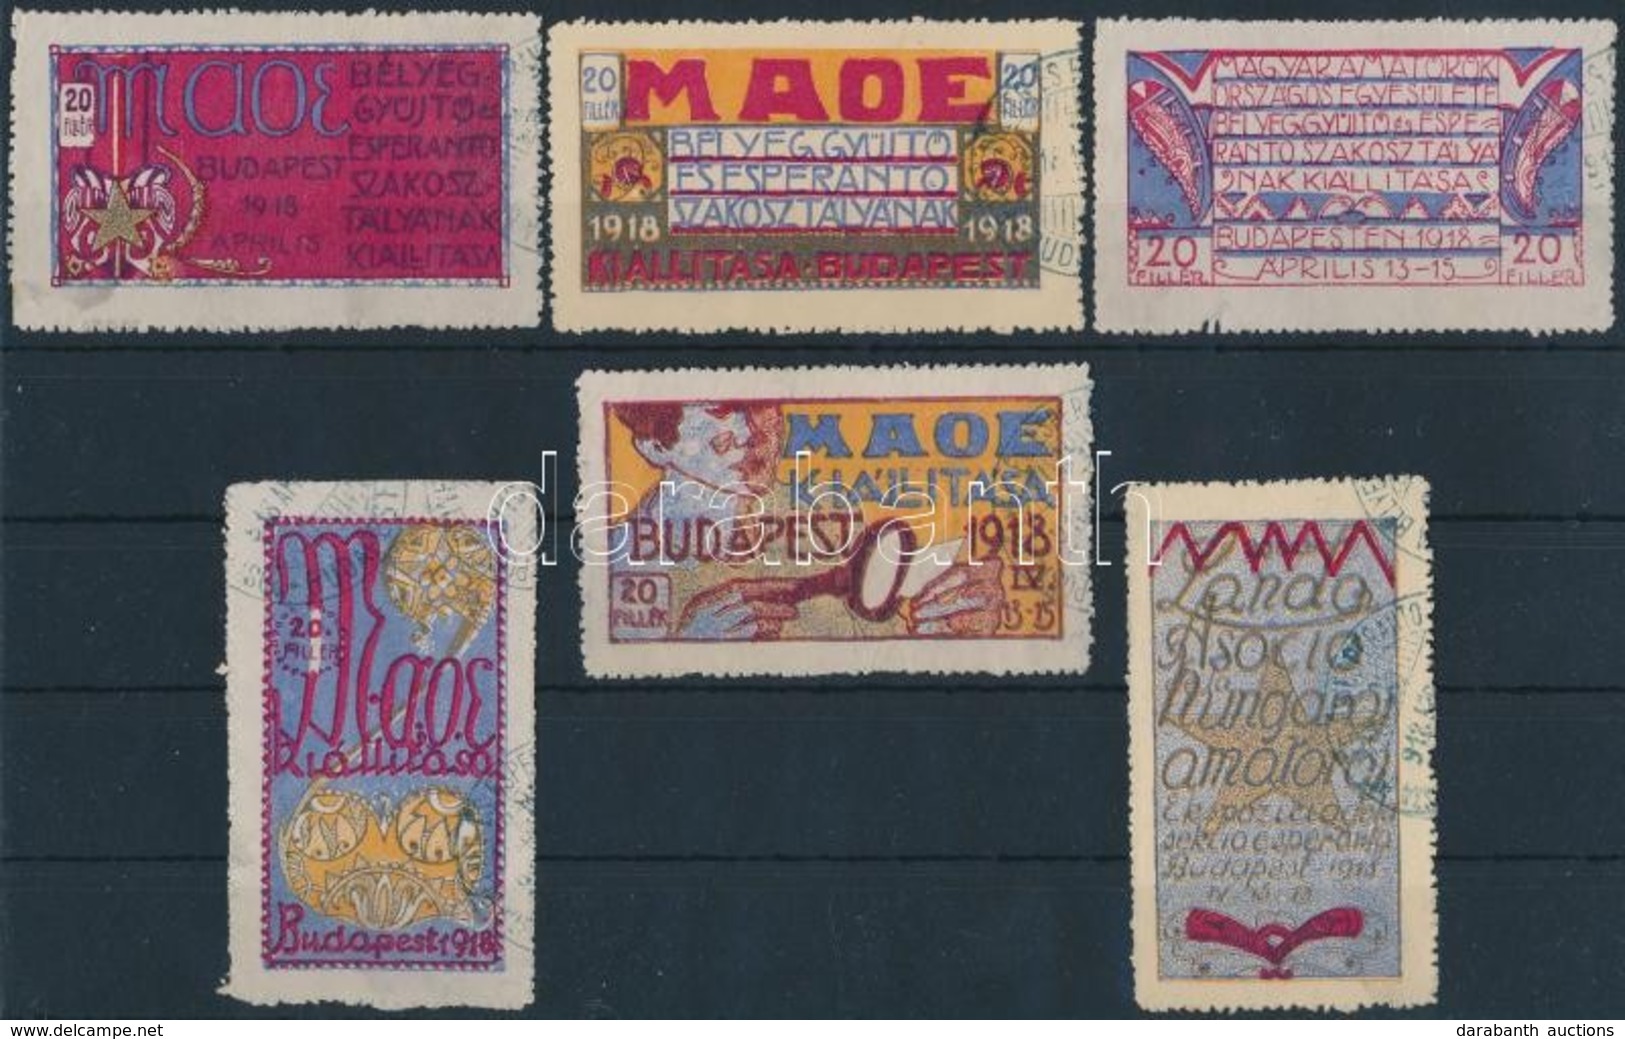 1918 6 Db Szecessziós Levélzáró A MAOE Bélyeggyűjtő és Eszperantó Kiállításról / Labels From MAOE Exhibition - Unclassified